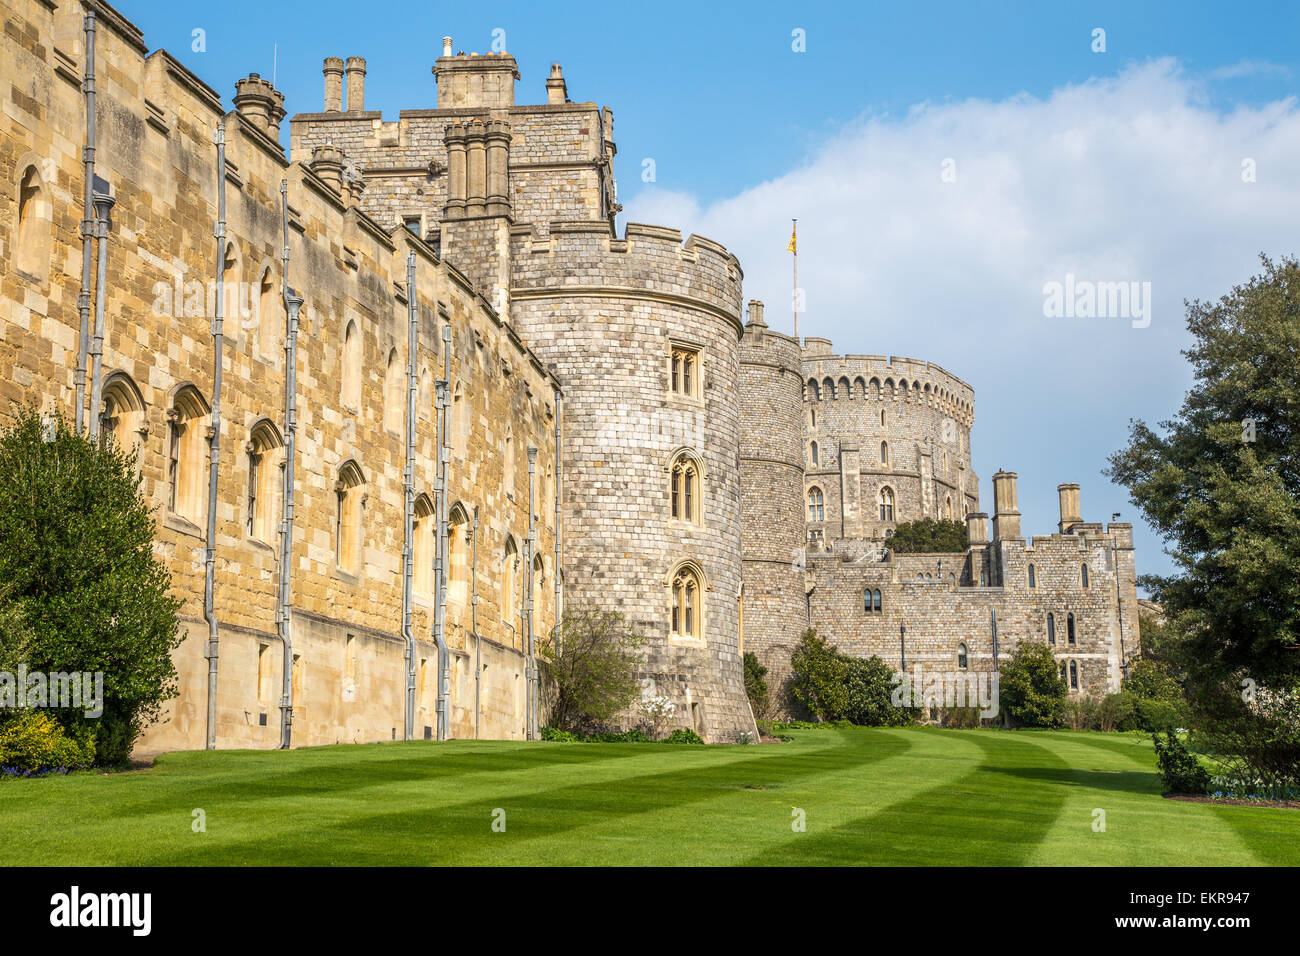 Murs extérieurs du château de Windsor et tour ronde, Windsor, Angleterre Banque D'Images